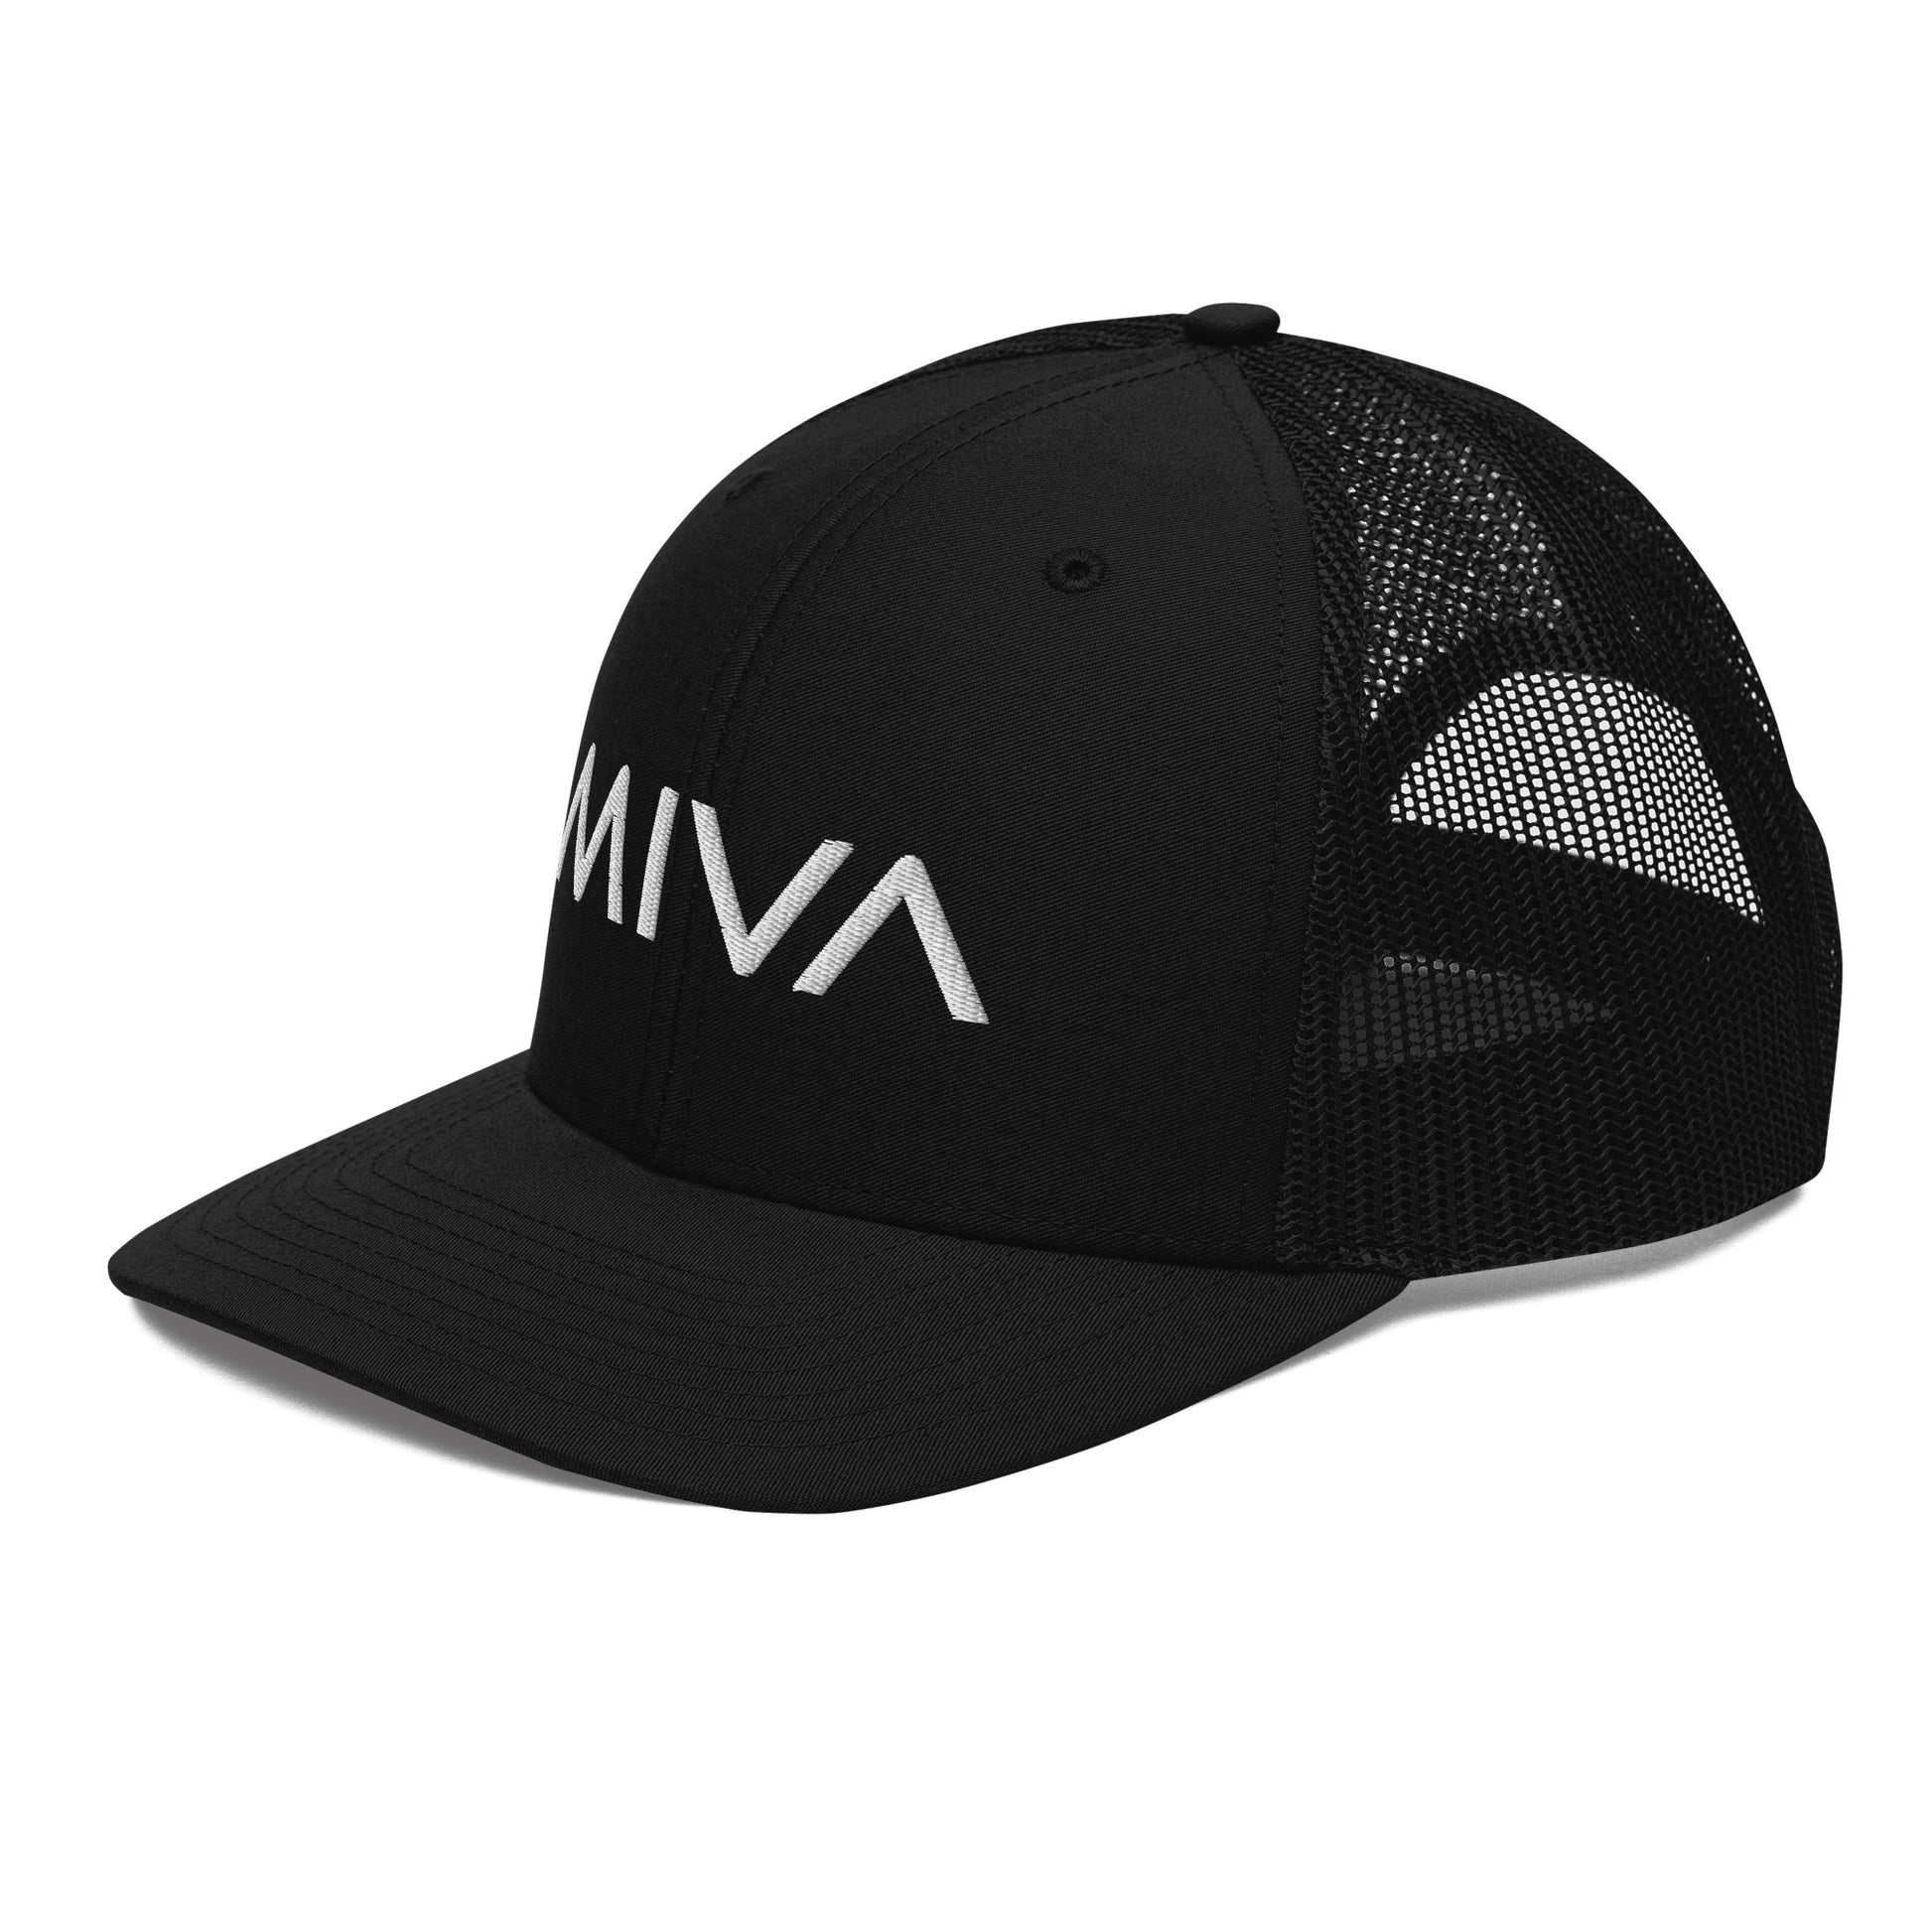 MIVA Recovery Trucker Hat